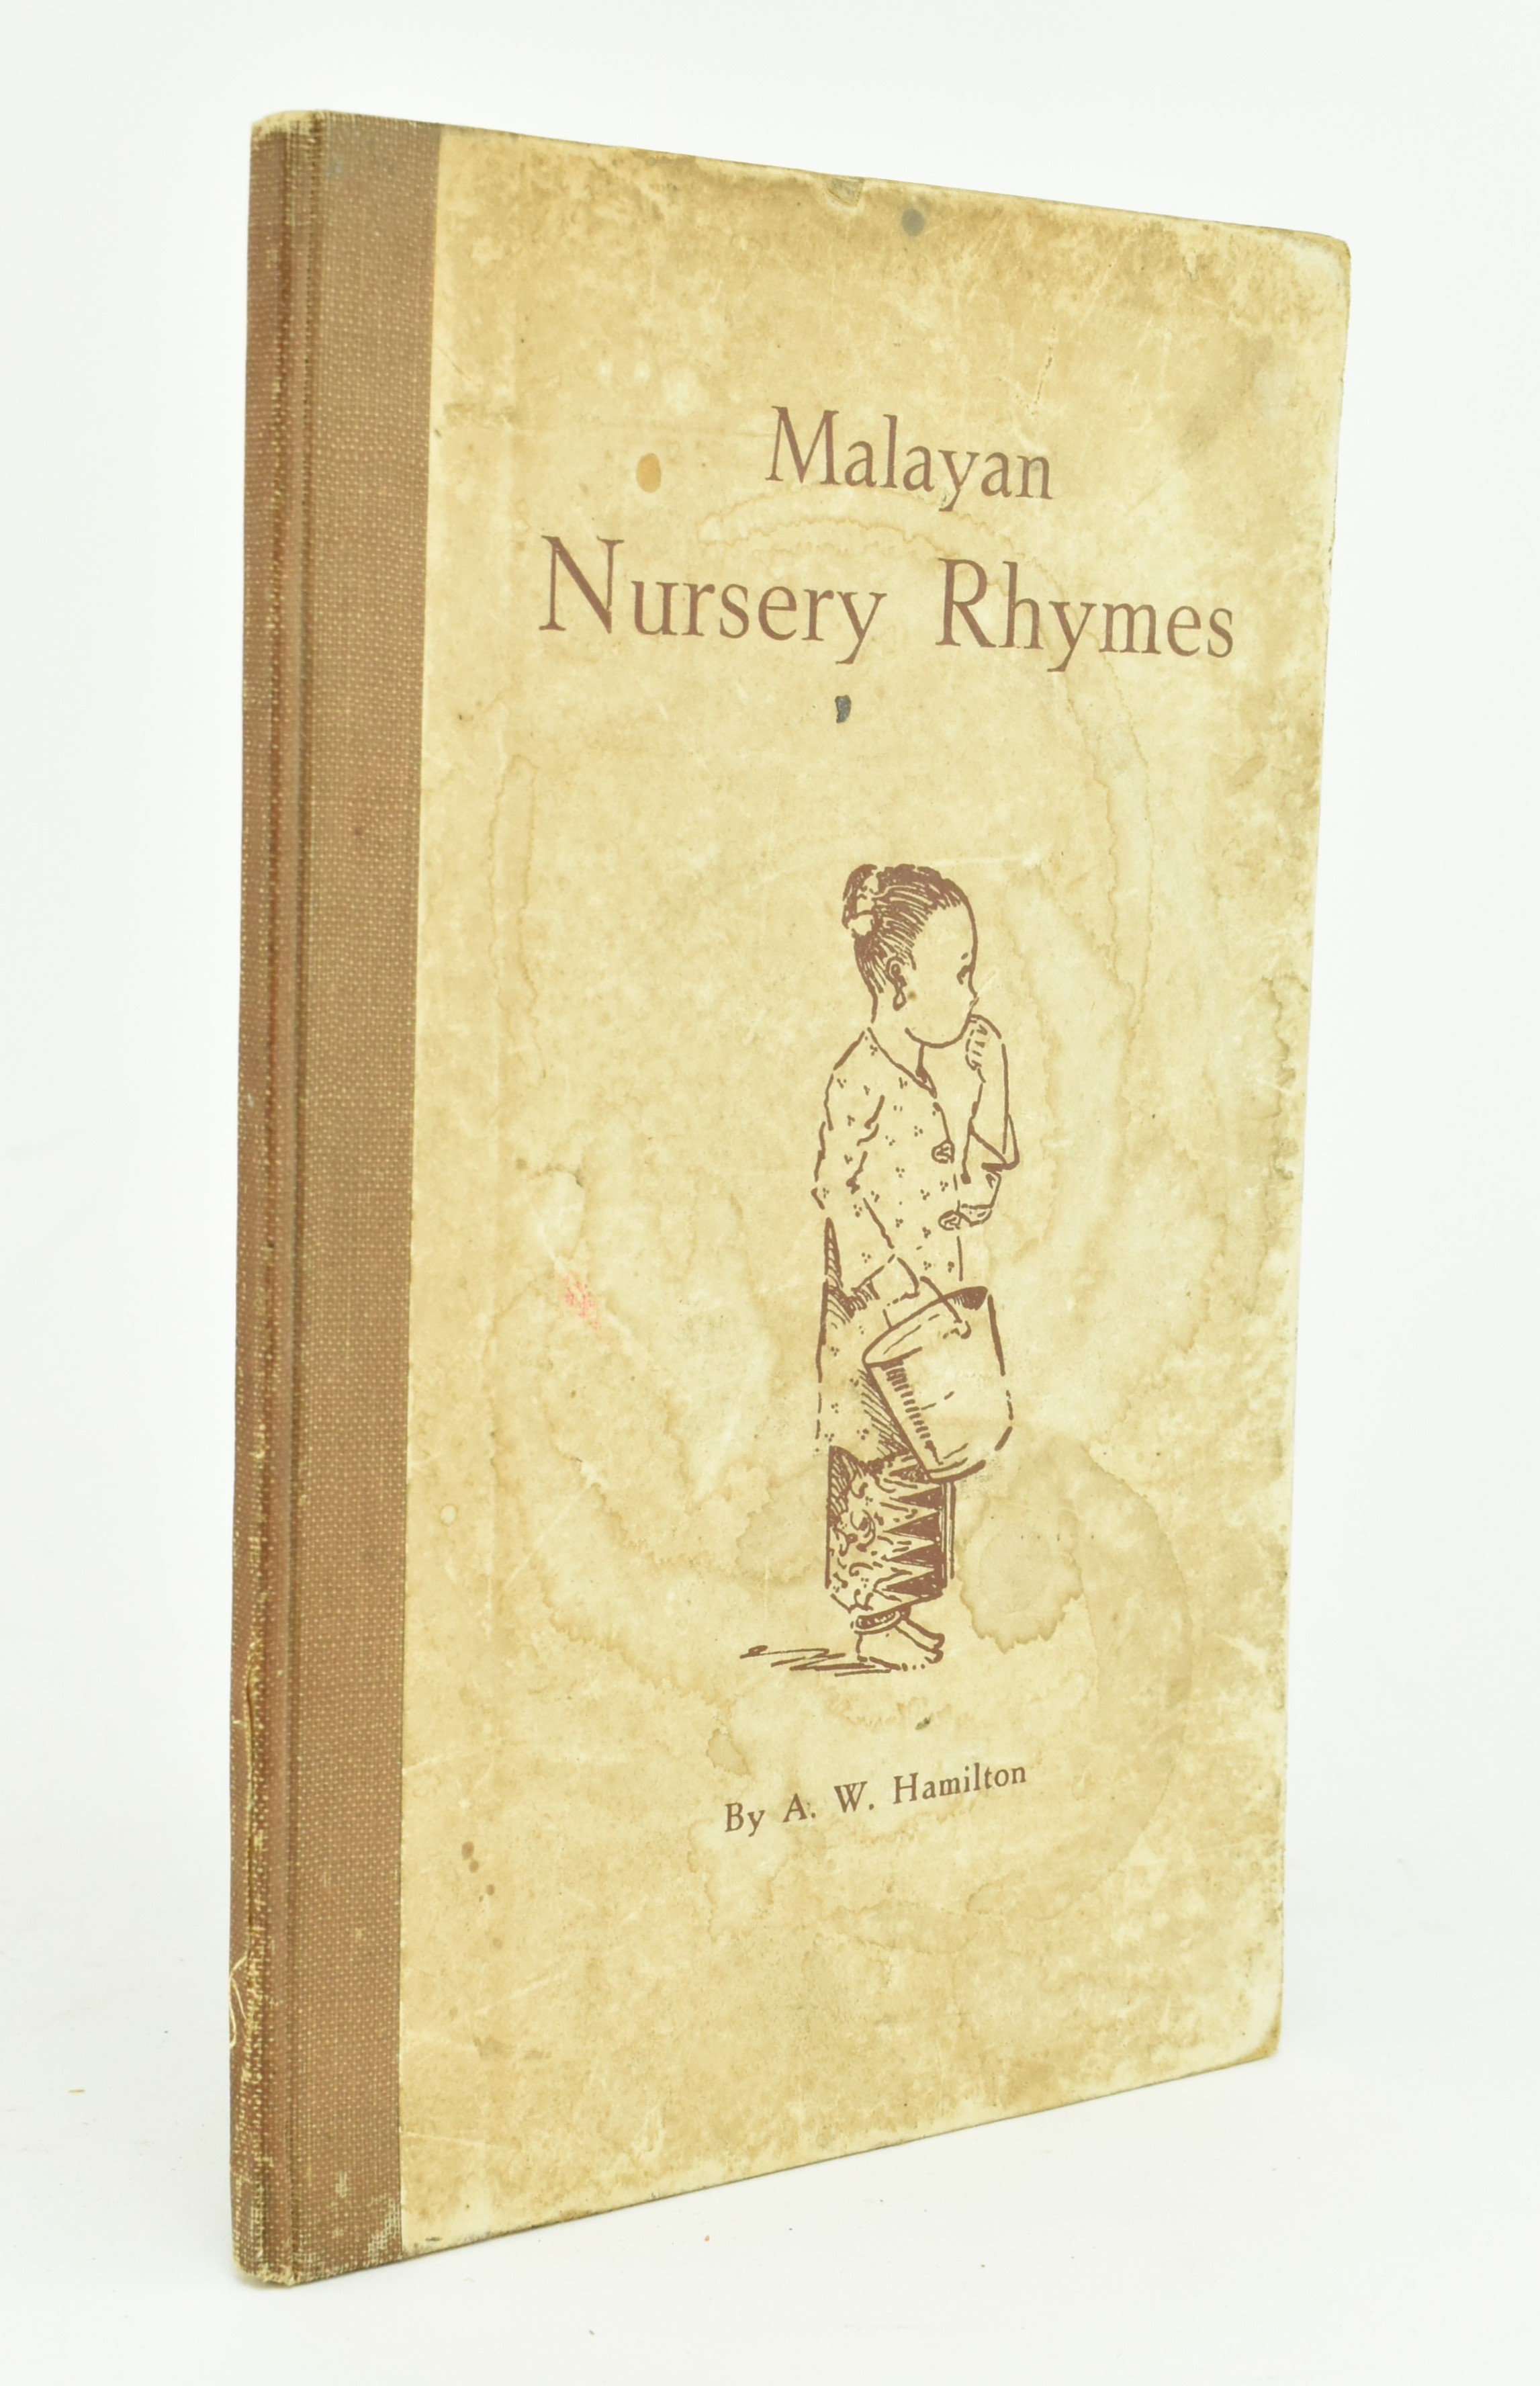 MALAYAN NURSERY RHYMES BY A. W. HAMILTON - SCARCE BOOK